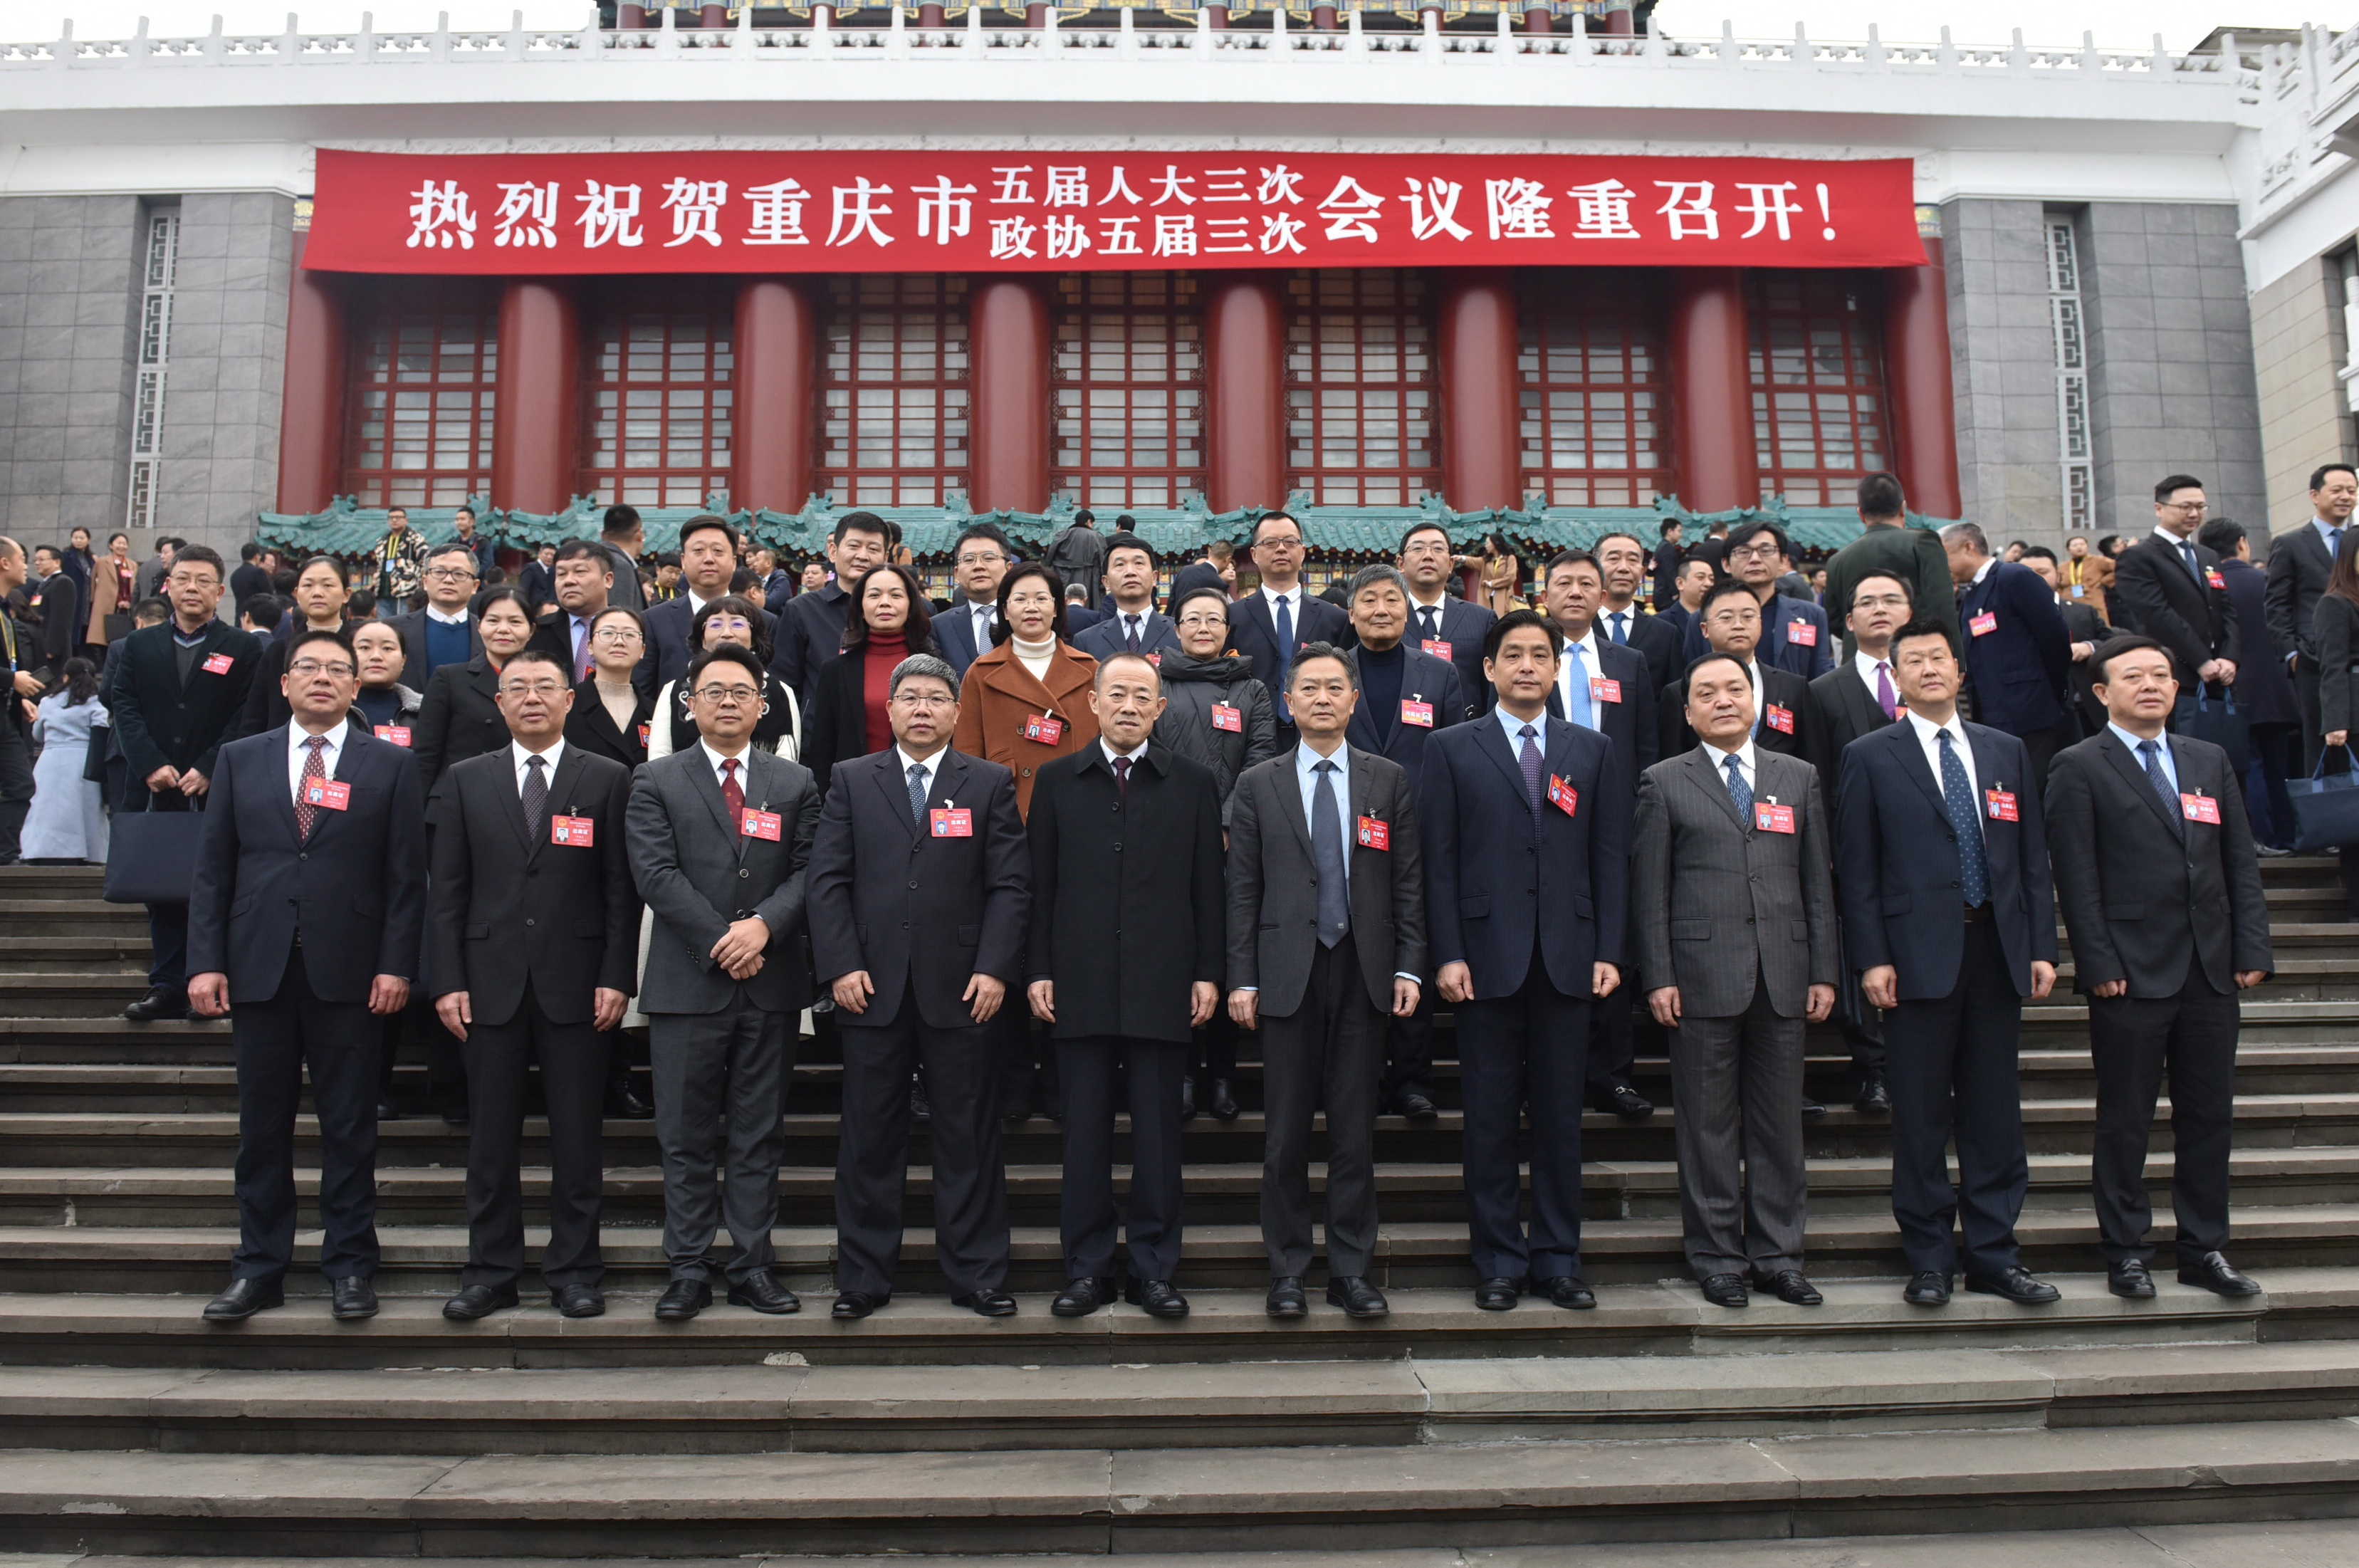 胡杰 苏盛宇)1月11日上午,重庆市第五届人民代表大会第三次会议在重庆